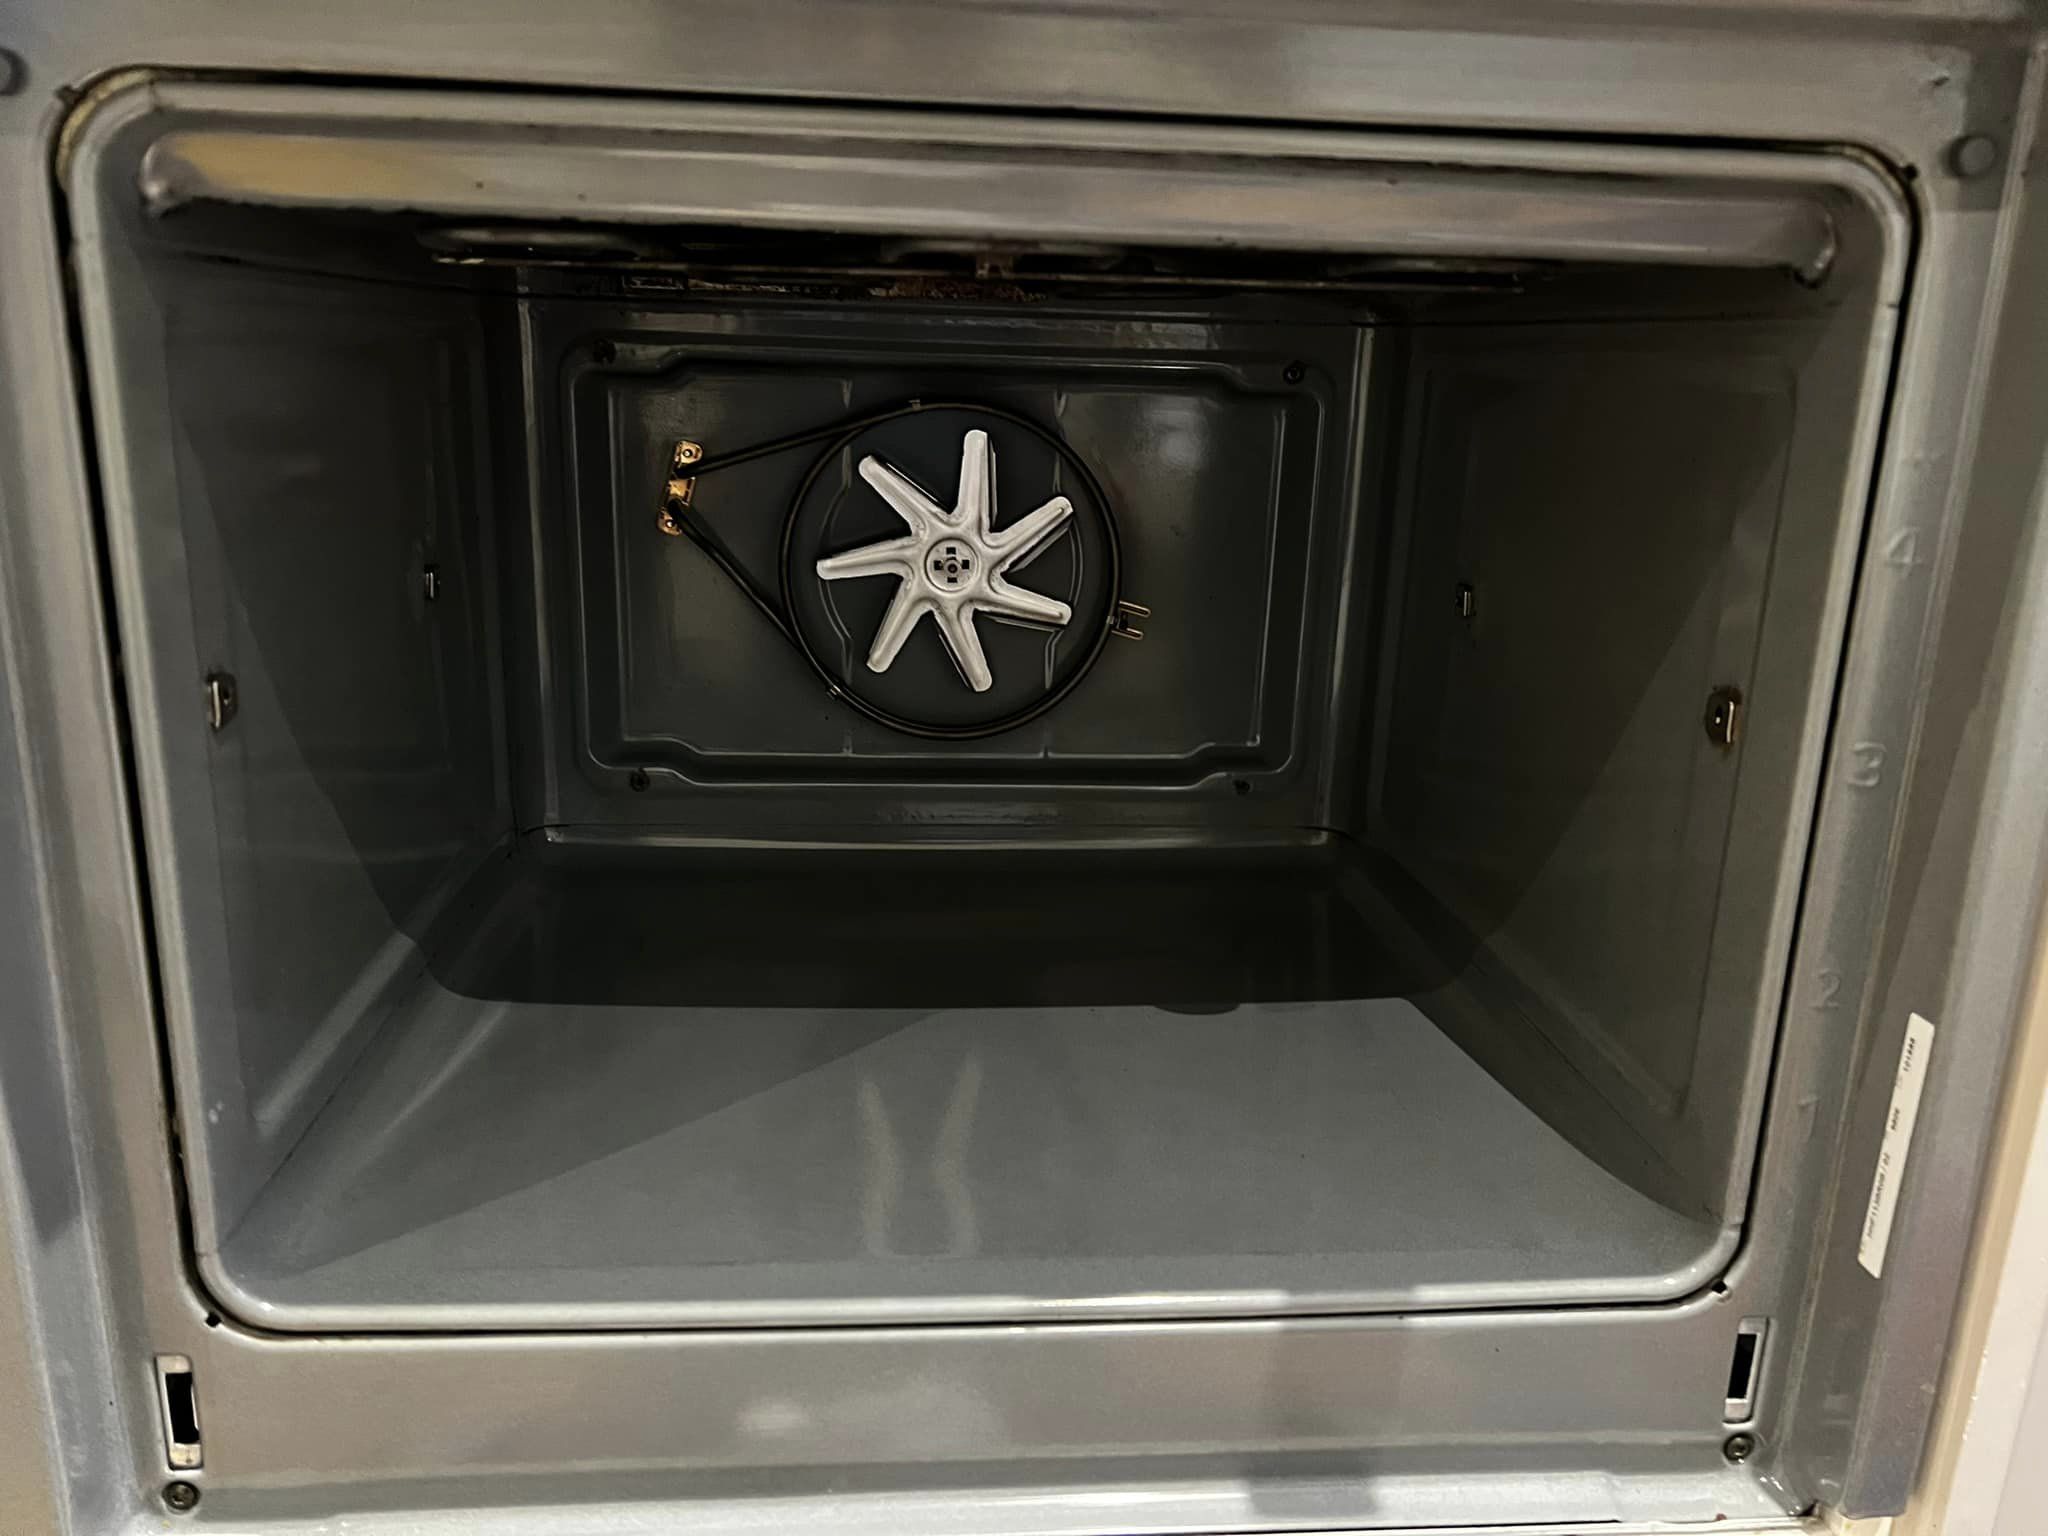 oven deep clean